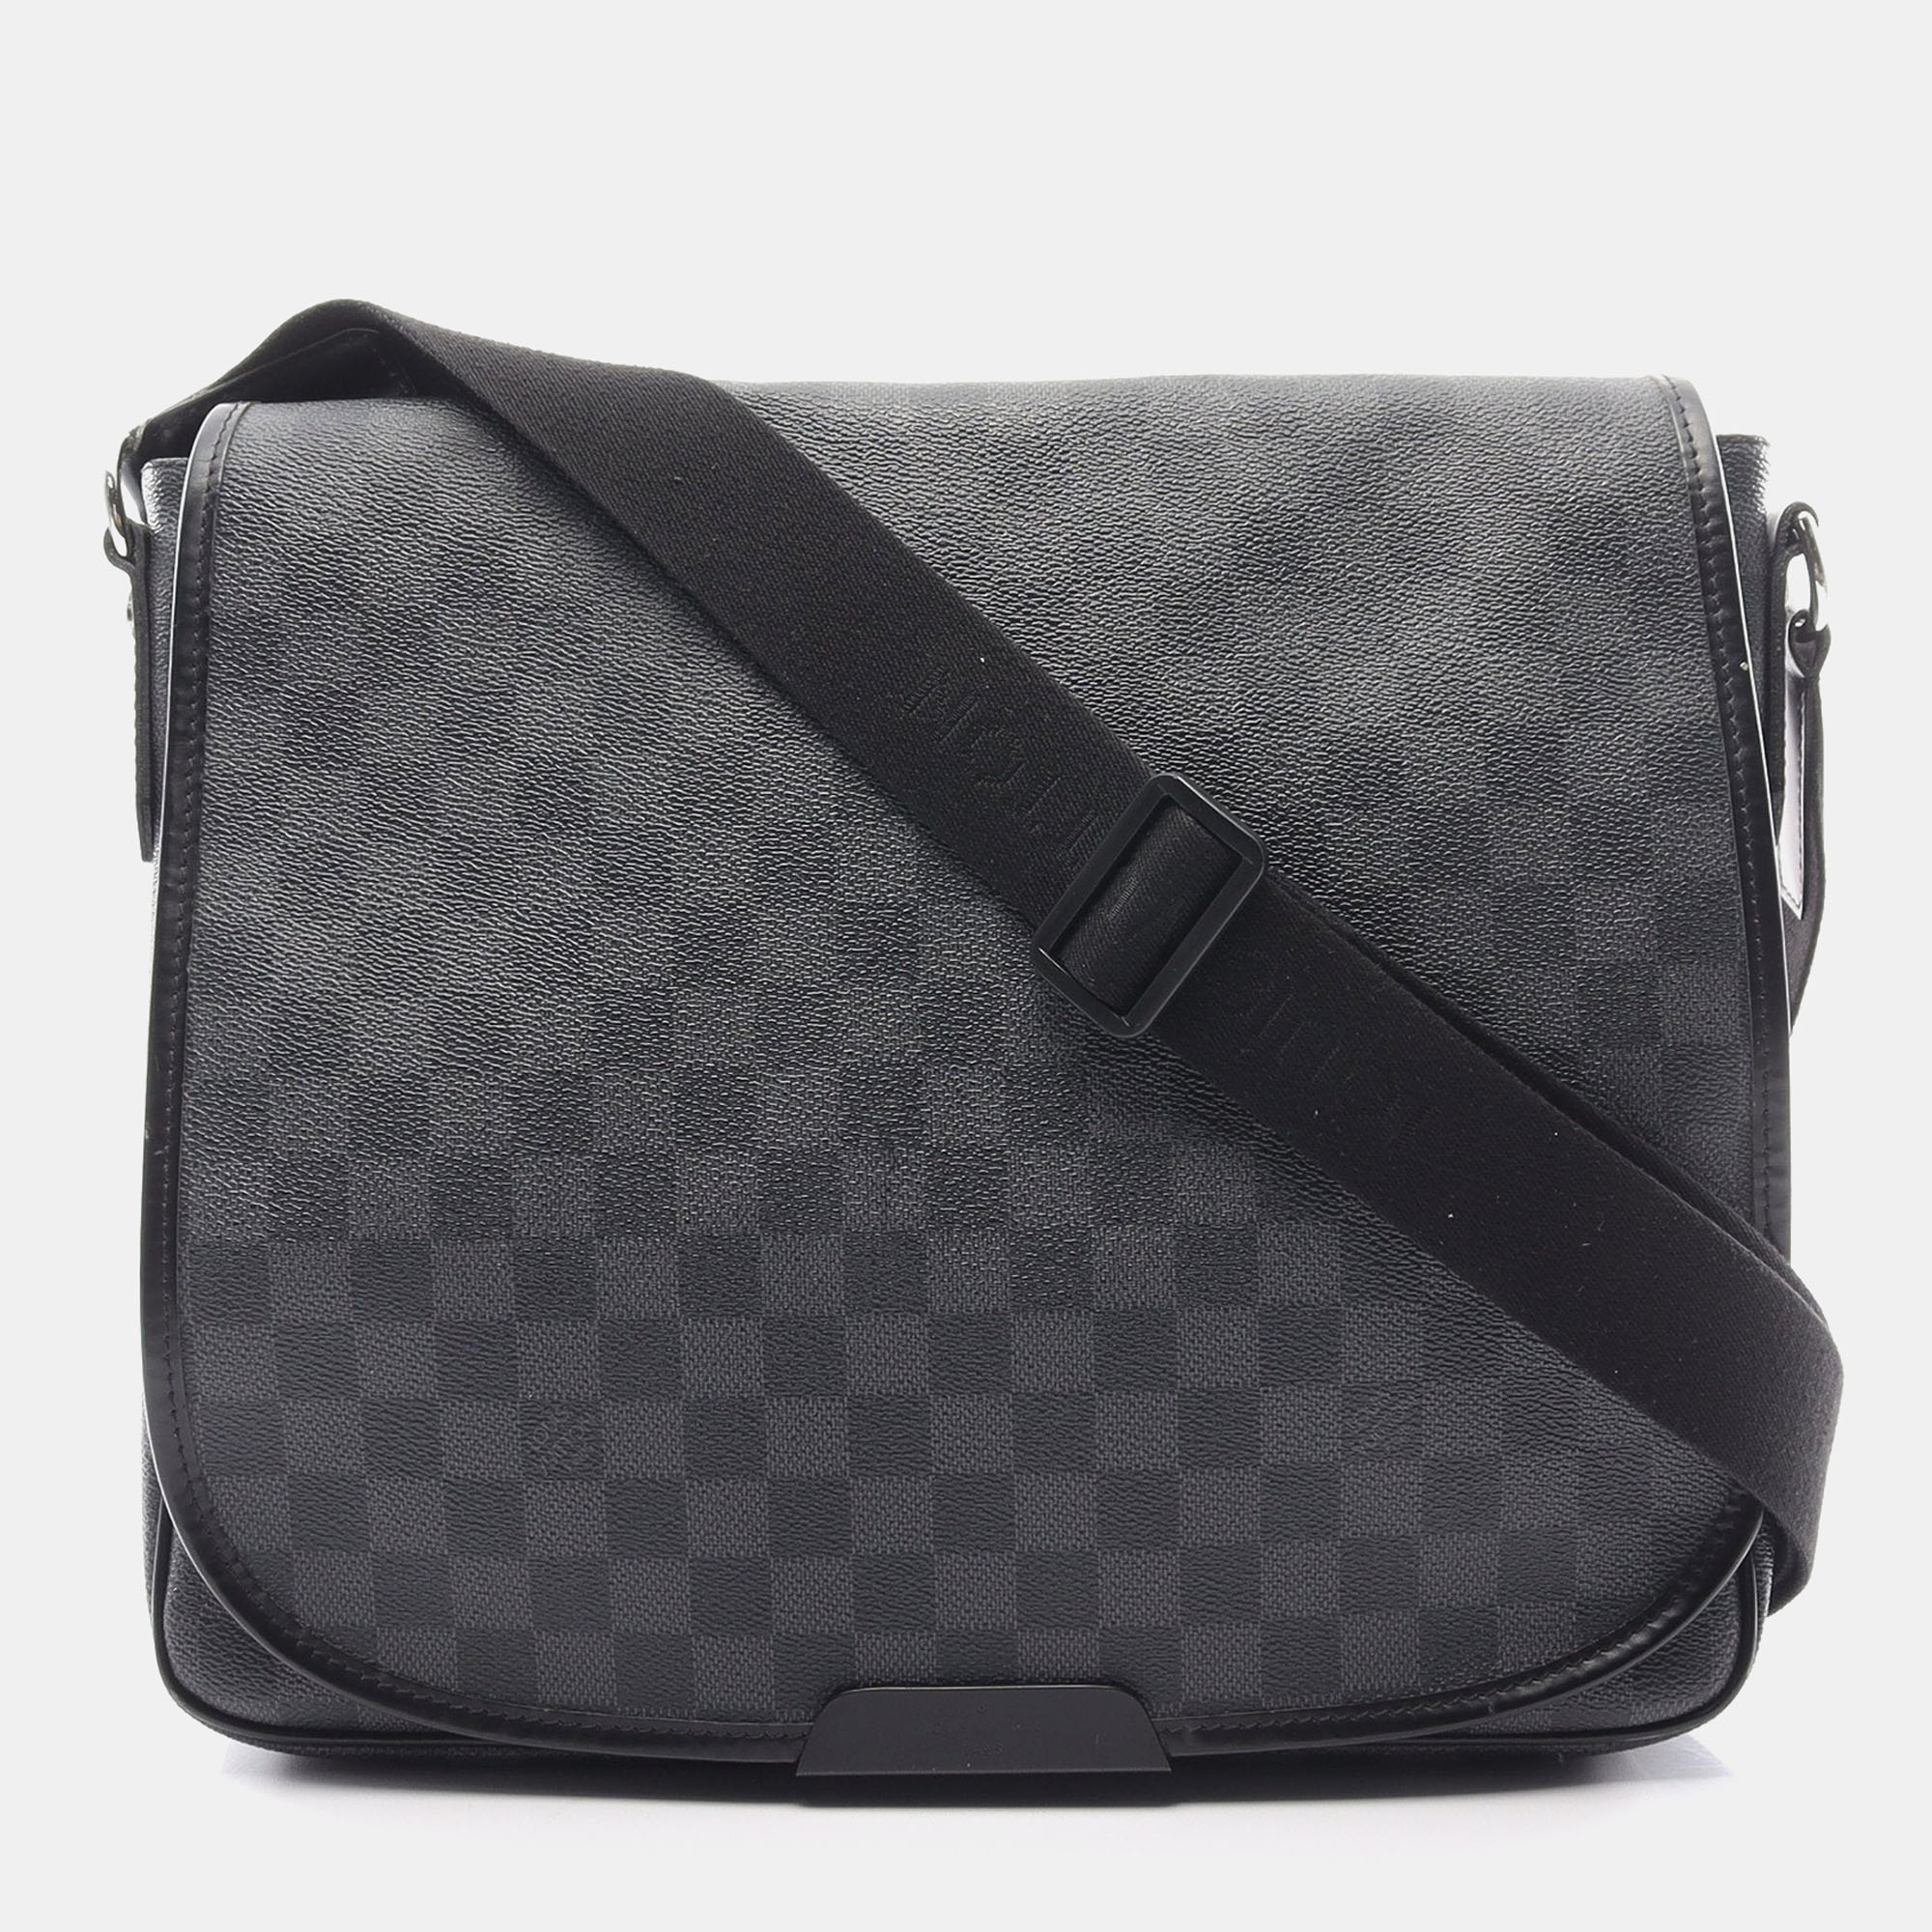 Pre-owned Louis Vuitton Daniel Mm Damier Graphite Shoulder Bag Pvc Leather Black